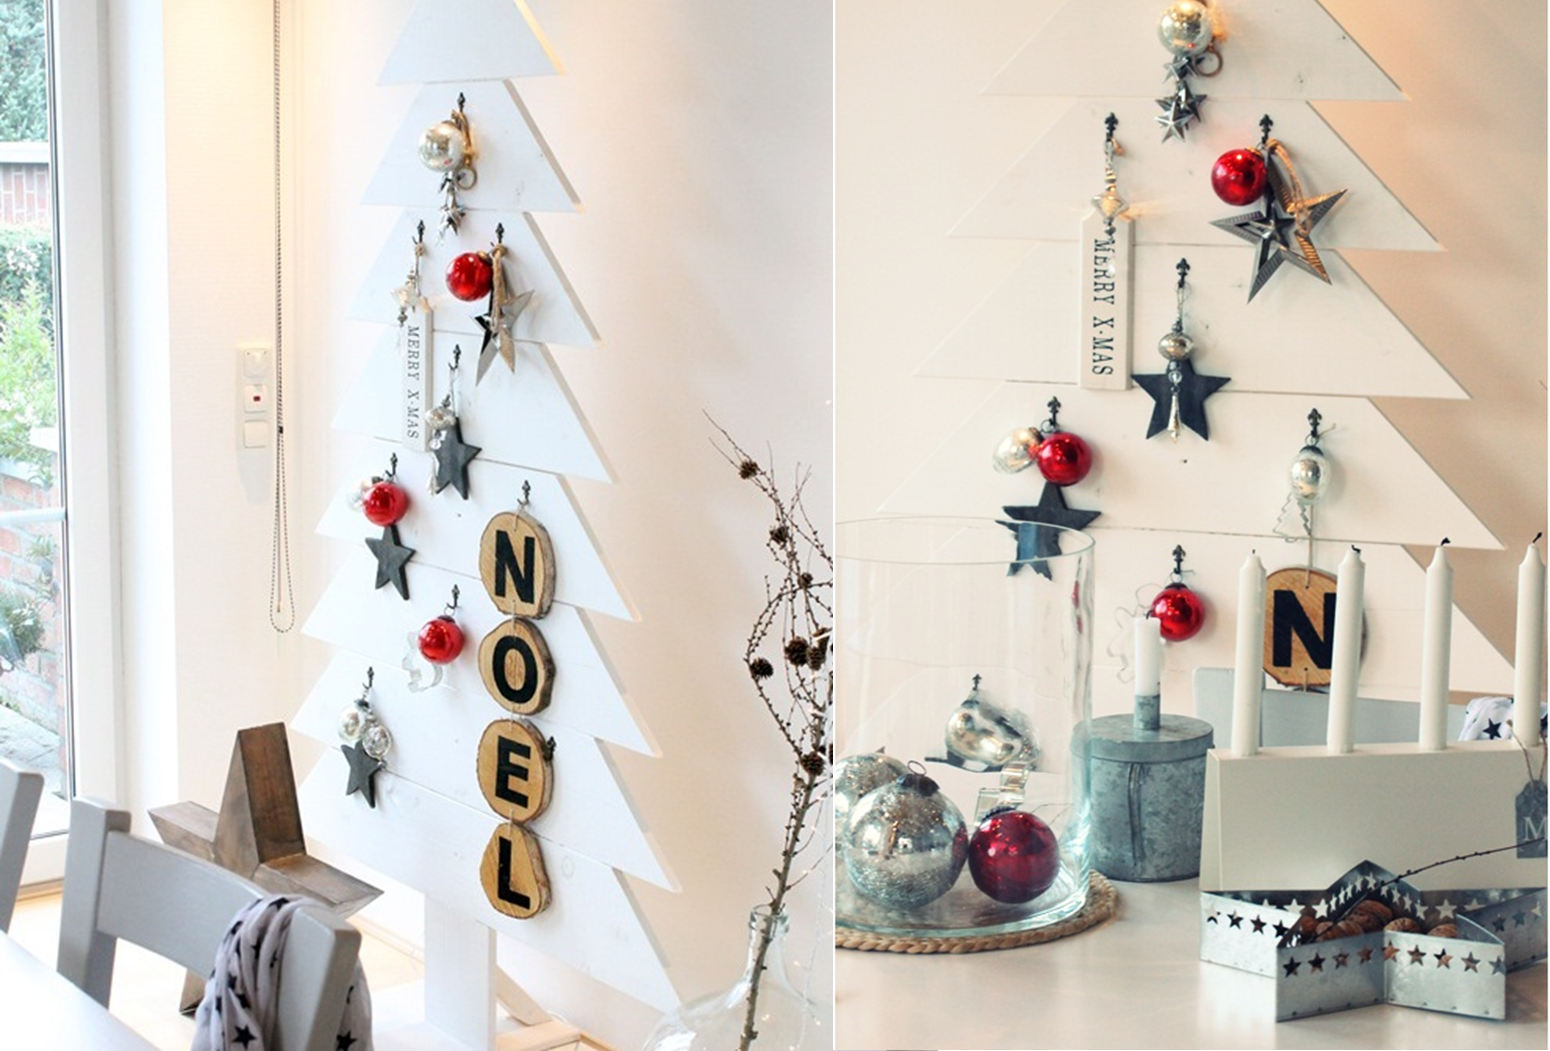 In der Farbe Weiß gestaltet passt sich der Weihnachtsbaum an den Raum an und die Deko stich mehr heraus.